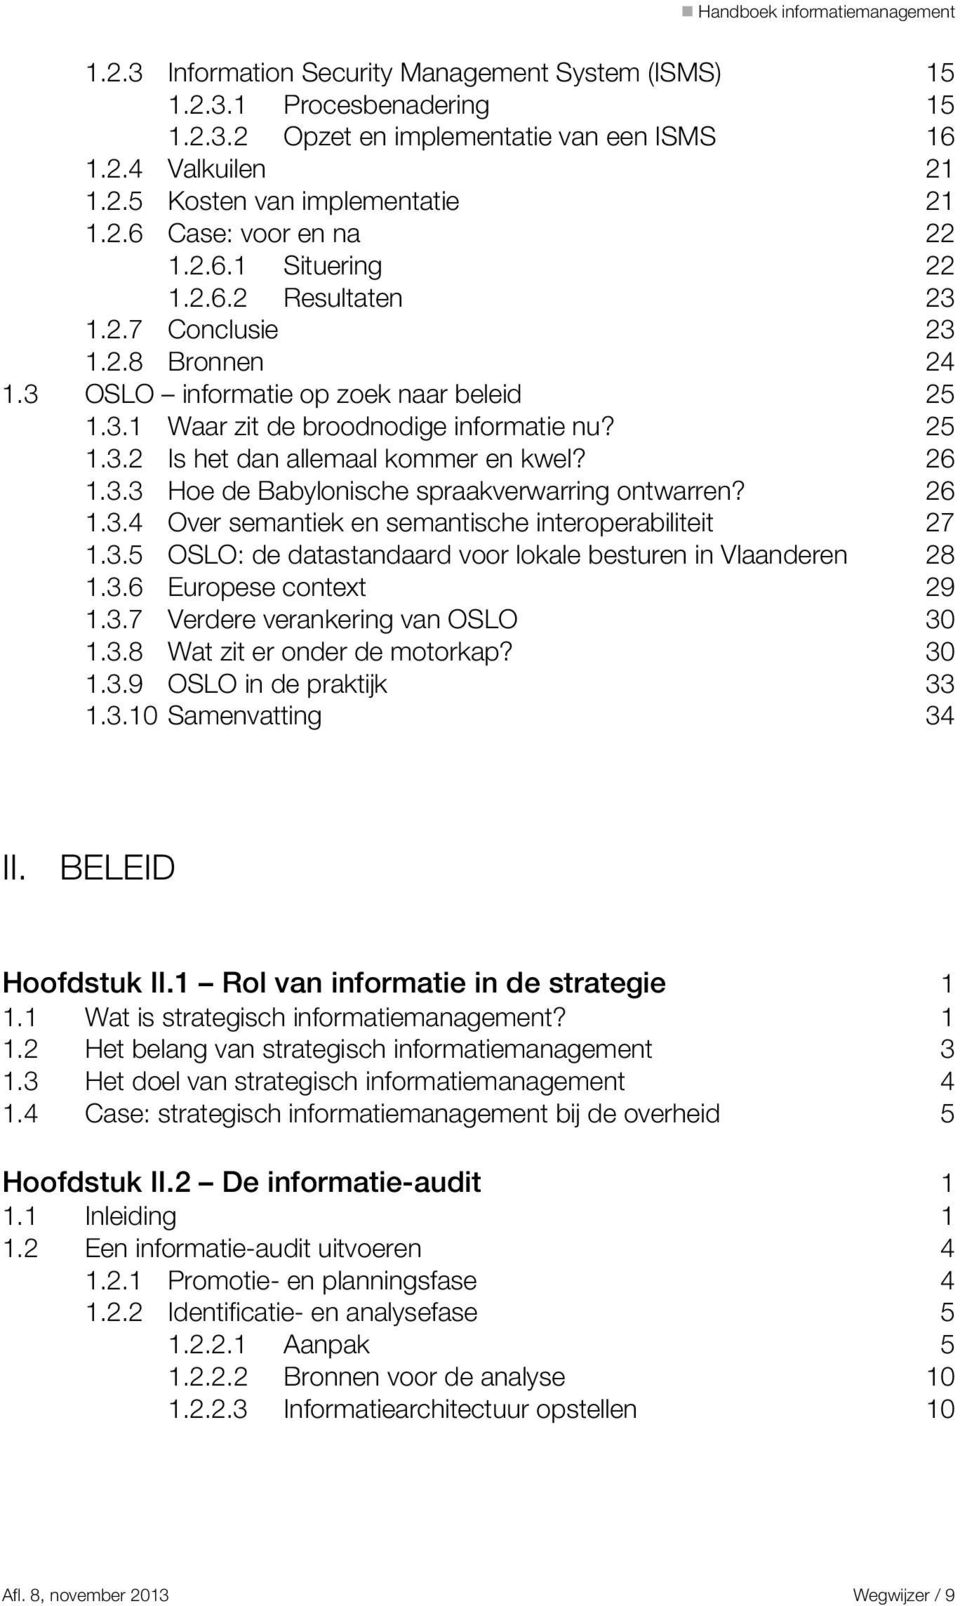 26 1.3.3 Hoe de Babylonische spraakverwarring ontwarren? 26 1.3.4 Over semantiek en semantische interoperabiliteit 27 1.3.5 OSLO: de datastandaard voor lokale besturen in Vlaanderen 28 1.3.6 Europese context 29 1.